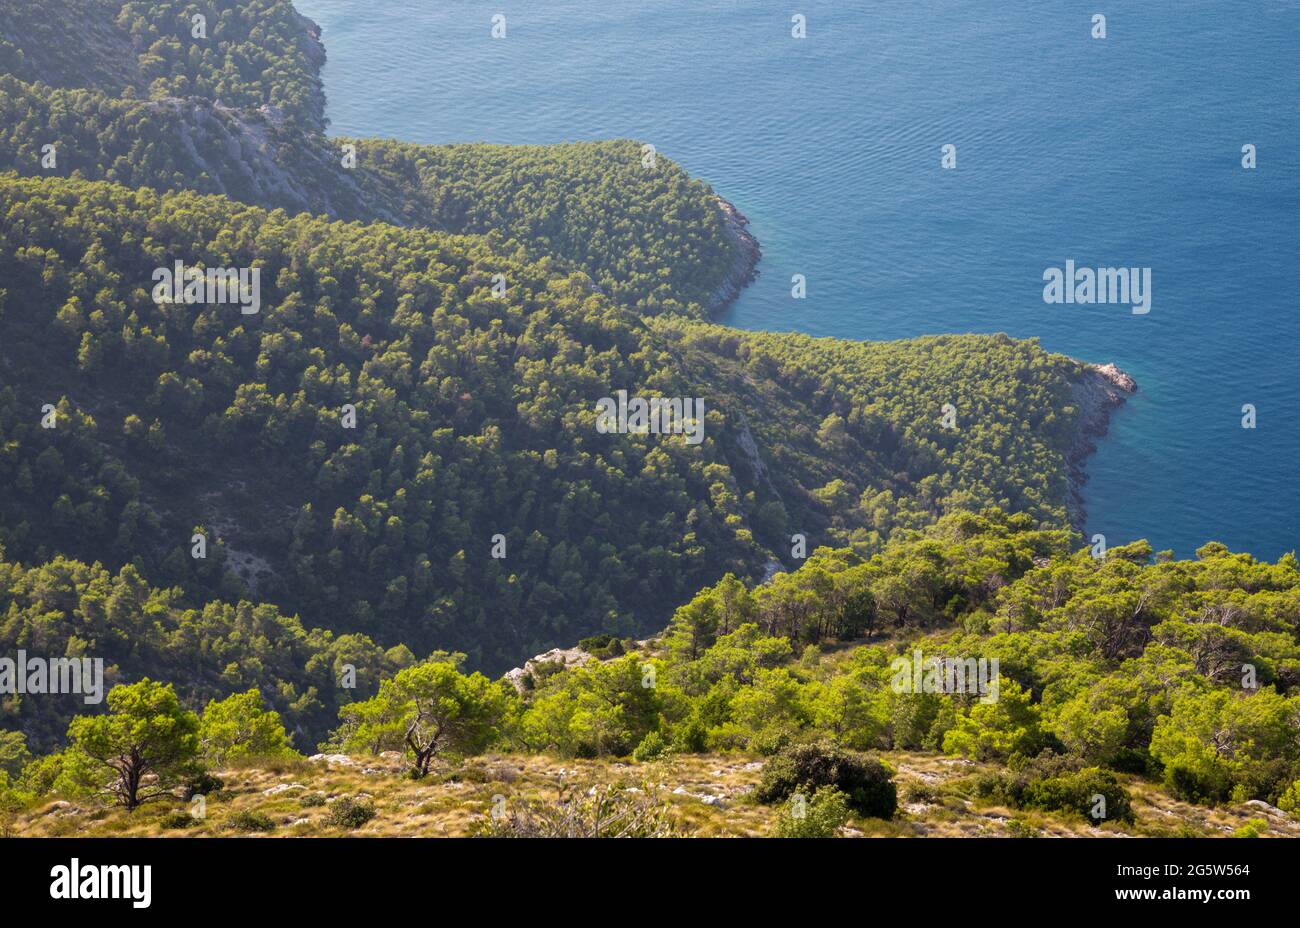 Croatie - le paysage côtier sauvage de la péninsule de Peliesac près de Zuliana de Sveti Ivan pic au lever du soleil Banque D'Images